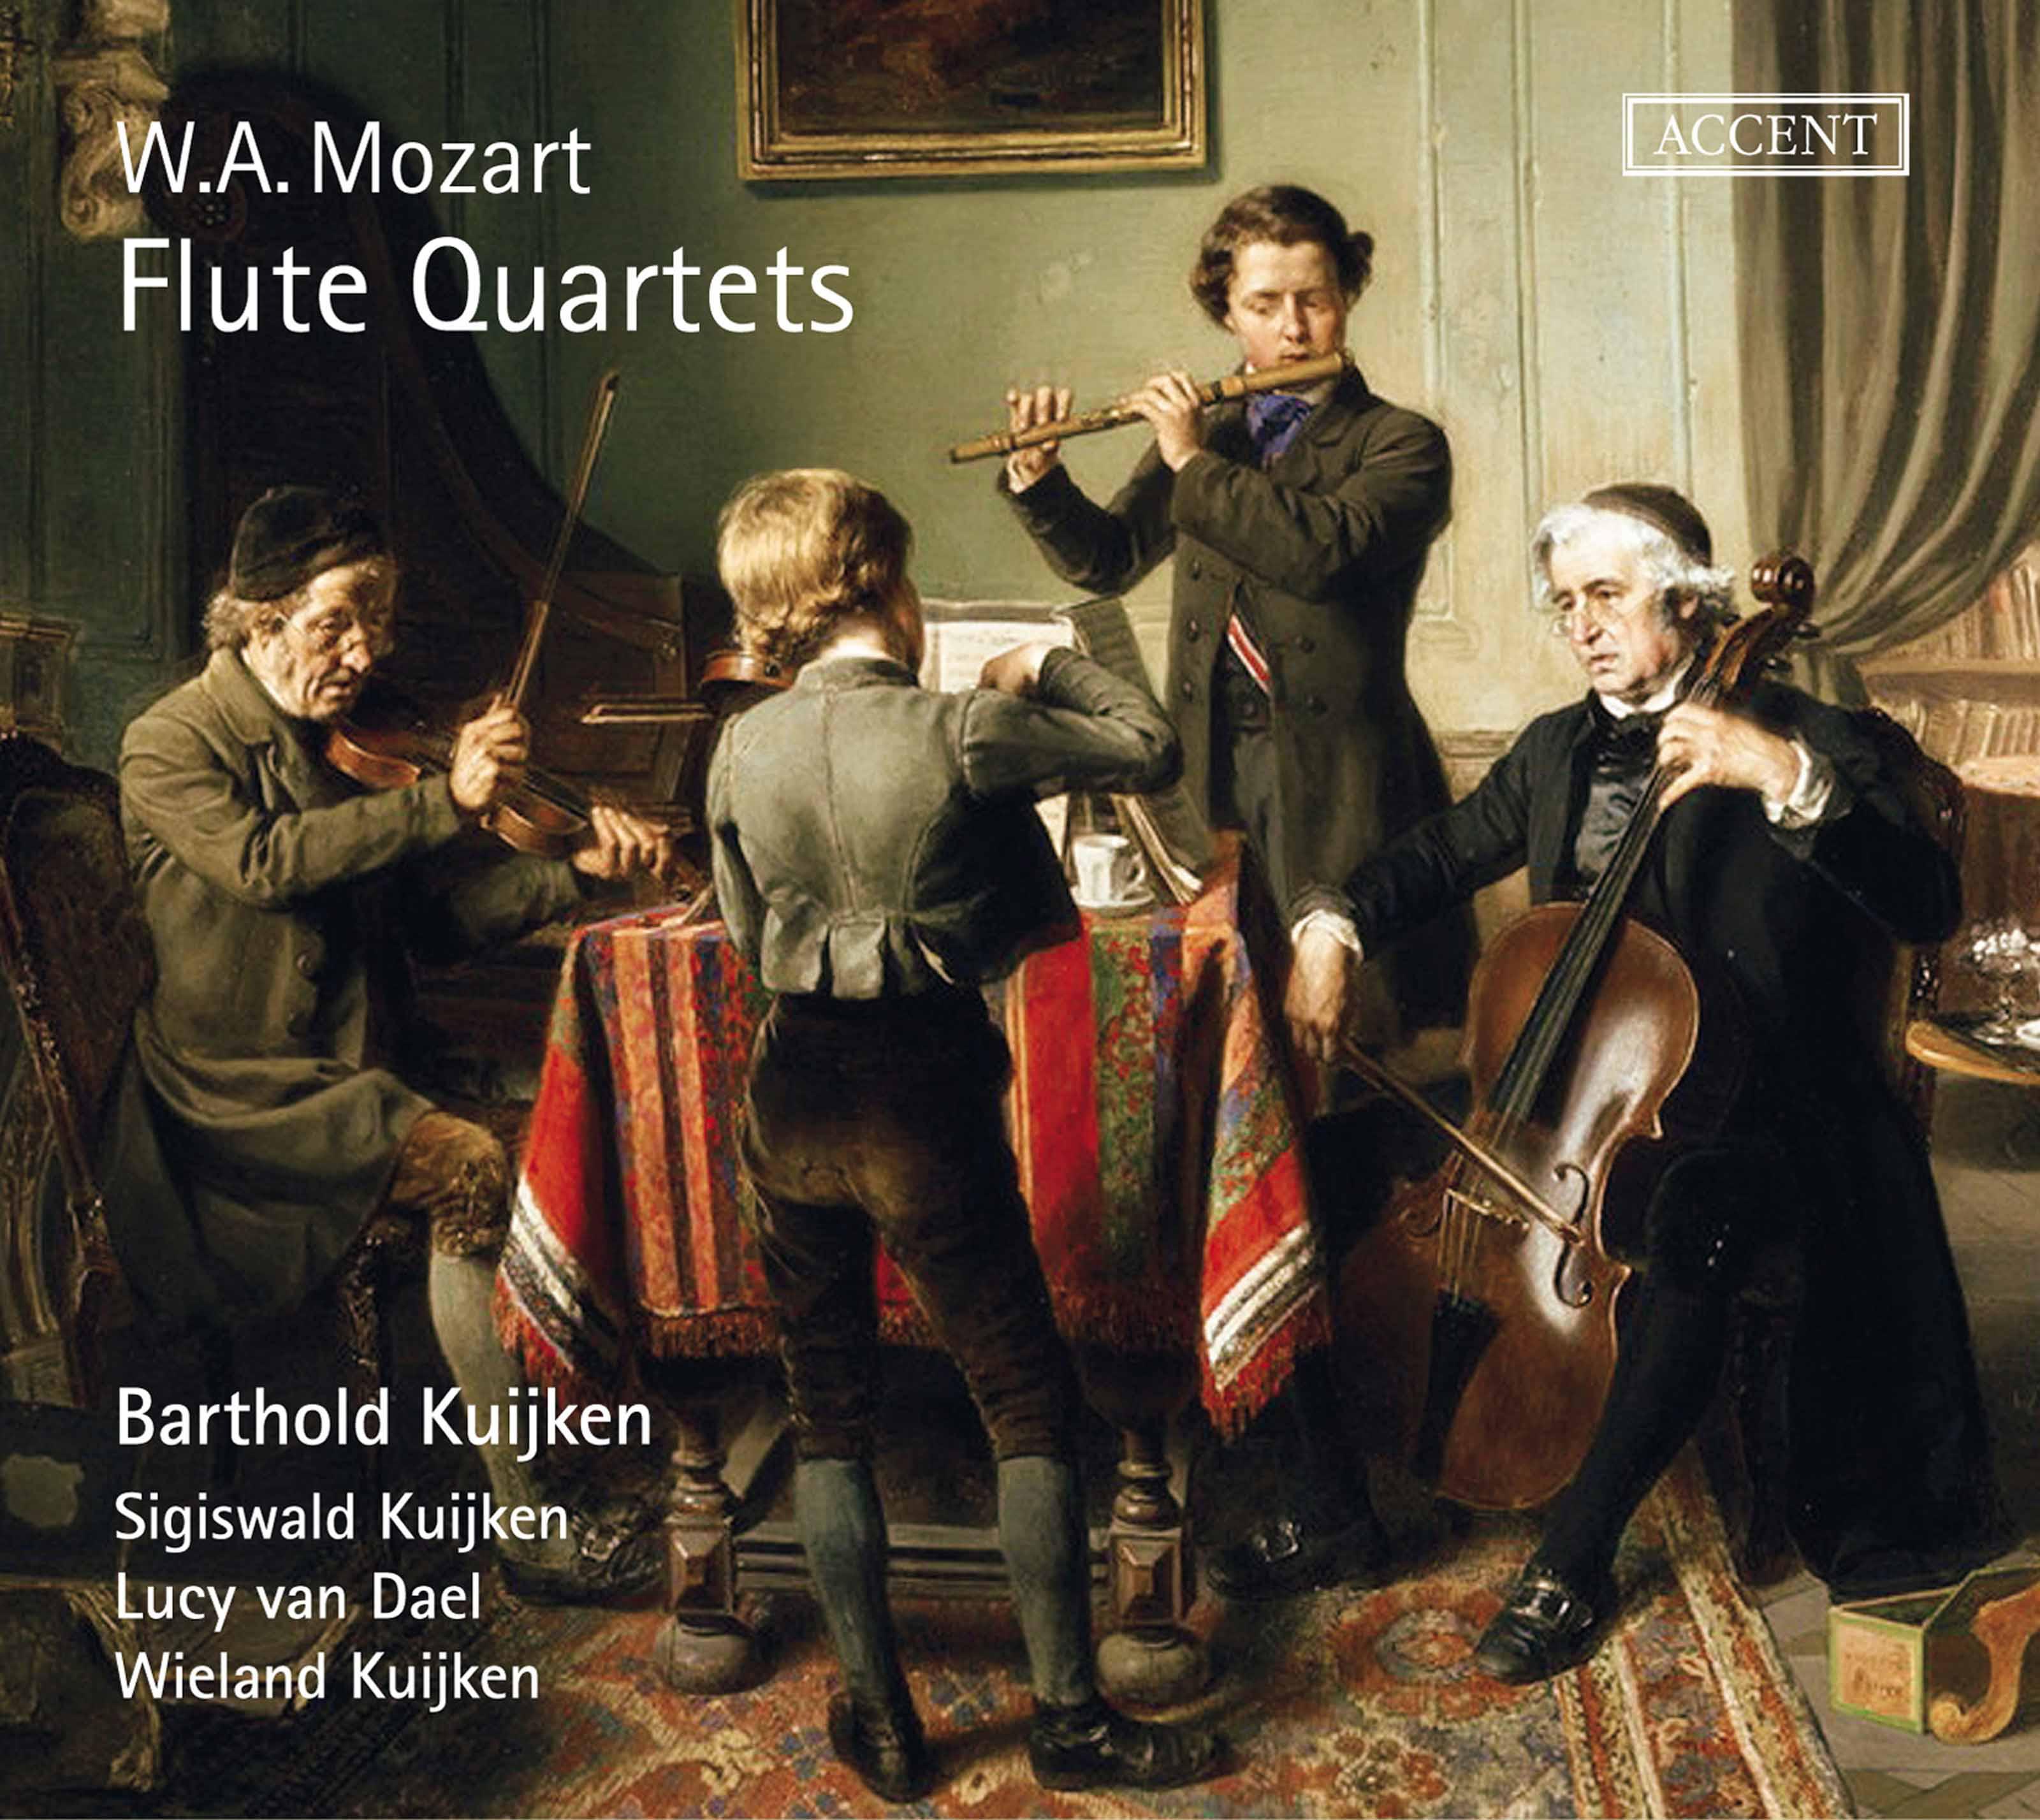 Flute Quartet No. 1 in D Major, K. 285: II. Adagio